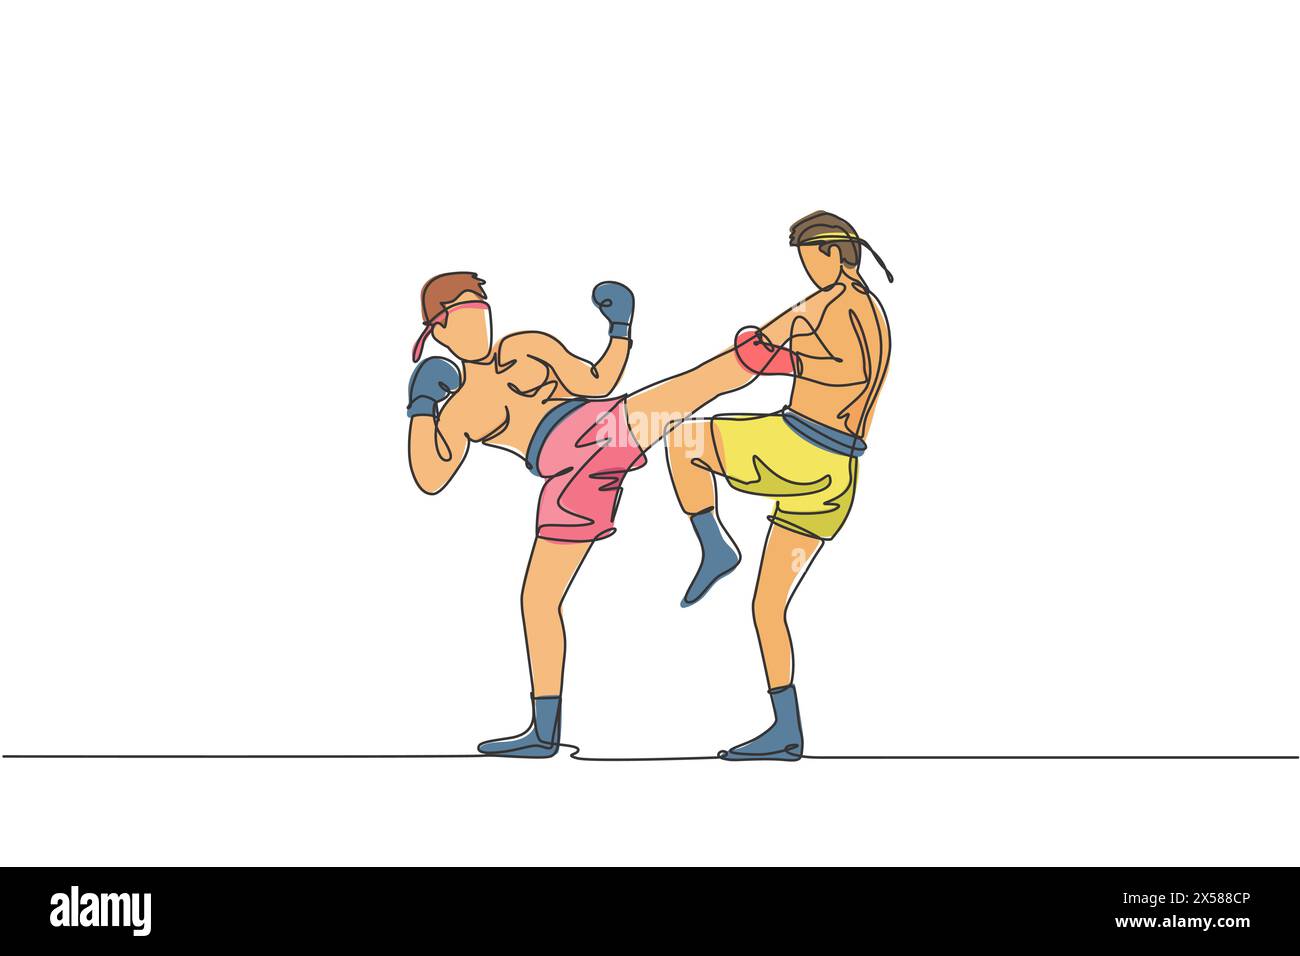 Un dessin simple ligne de deux jeunes hommes énergiques de combat muay thai s'entraînent pour duel à l'illustration vectorielle du centre de fitness de gymnastique. Boxe thaïlandaise combative sp Illustration de Vecteur